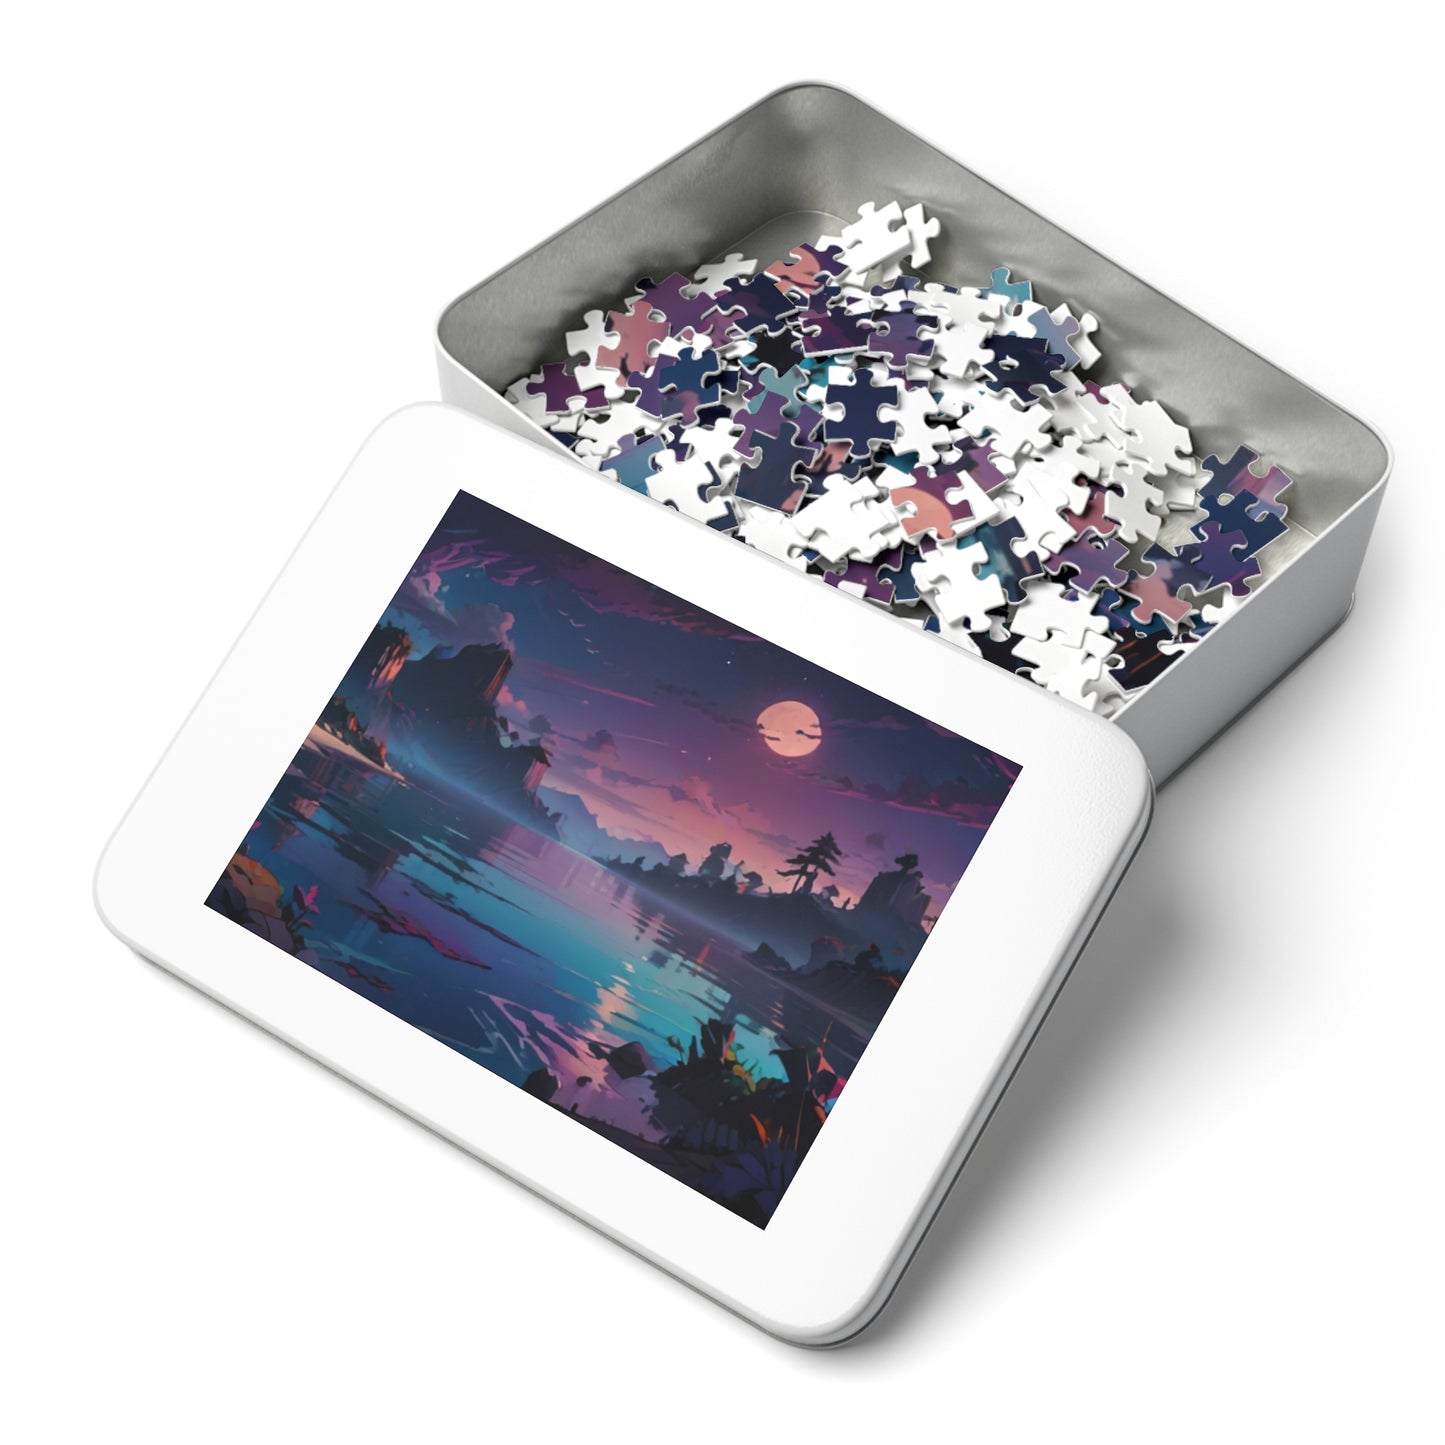 Twilight Archipelago Jigsaw Puzzle (30, 110, 252, 500, 1000-Piece))